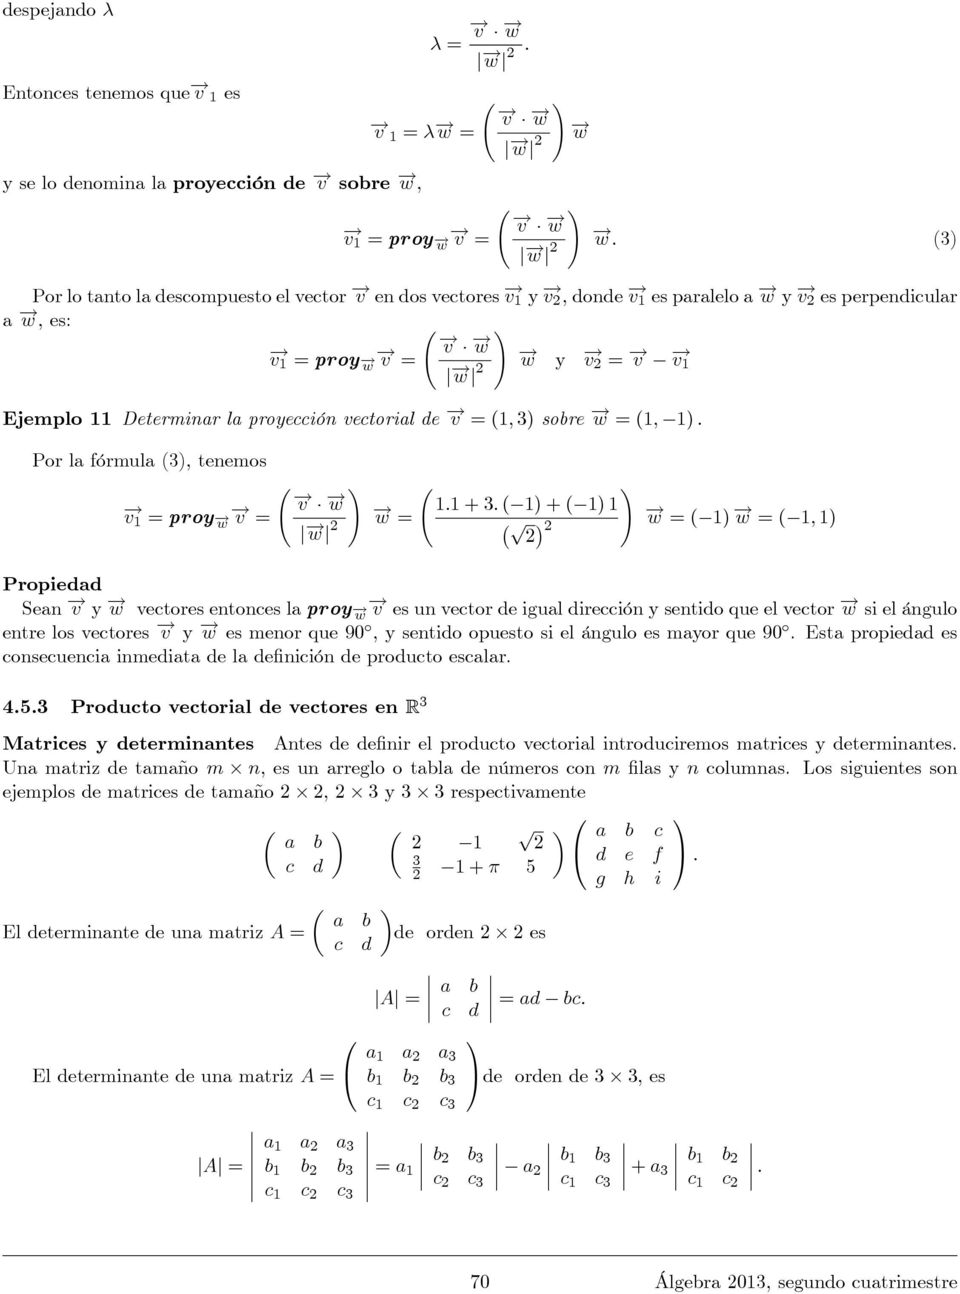 la fórmula (), tenemos v1 = proy w v = v w j w j w = 1:1 + : ( 1) + ( 1) 1 p w = ( 1) w = ( 1; 1) Propiedad Sean v y w vectores entonces la proy w v es un vector de igual dirección y sentido que el